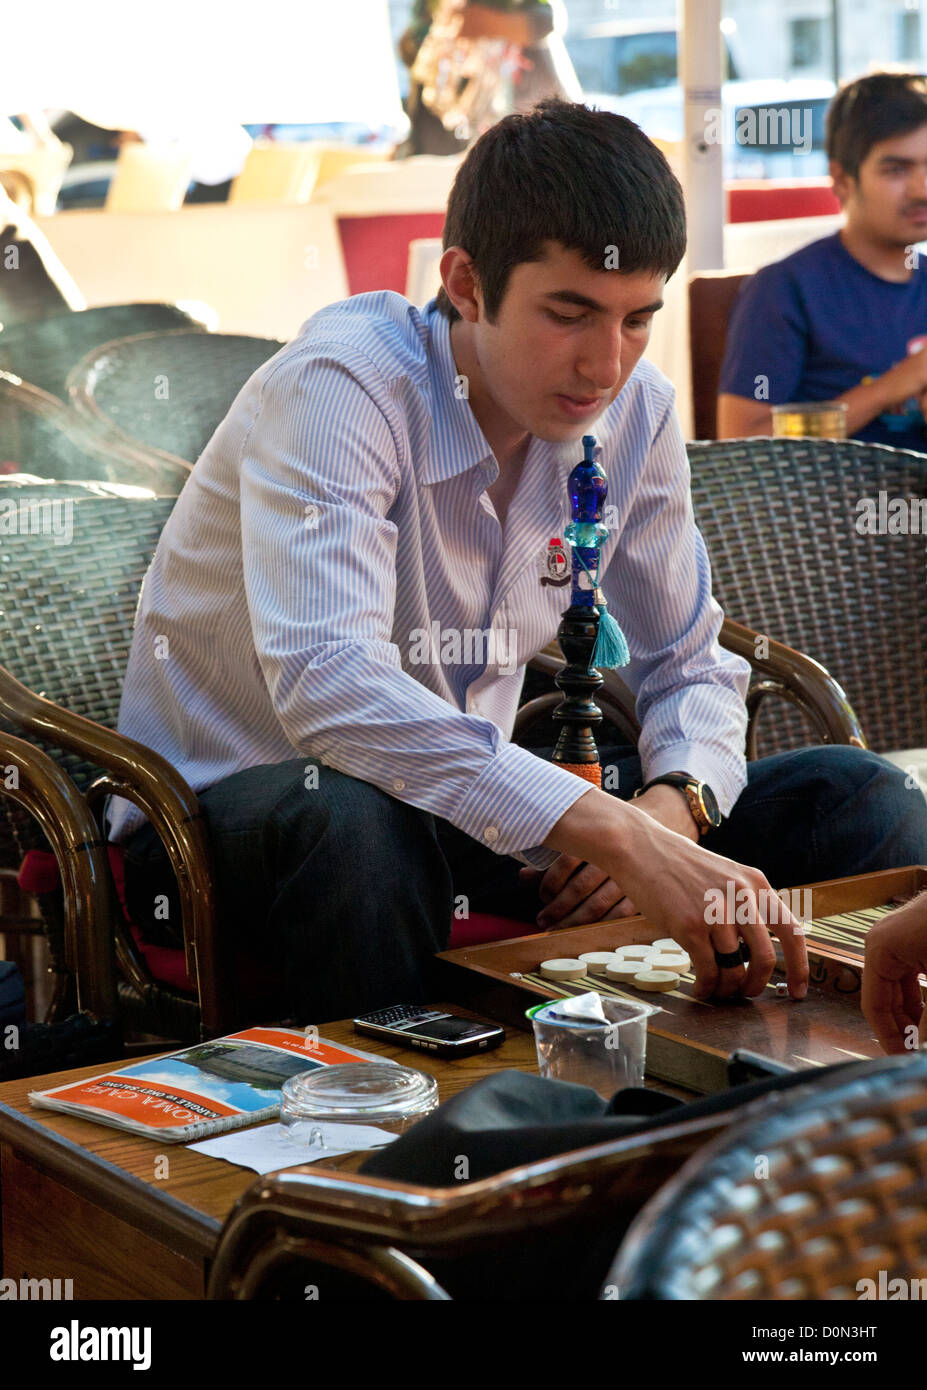 Ein Mann, Backgammon spielen, während das Rauchen einer Shisha/Nargile Rohr in einem Café in Istanbul, Türkei. Stockfoto